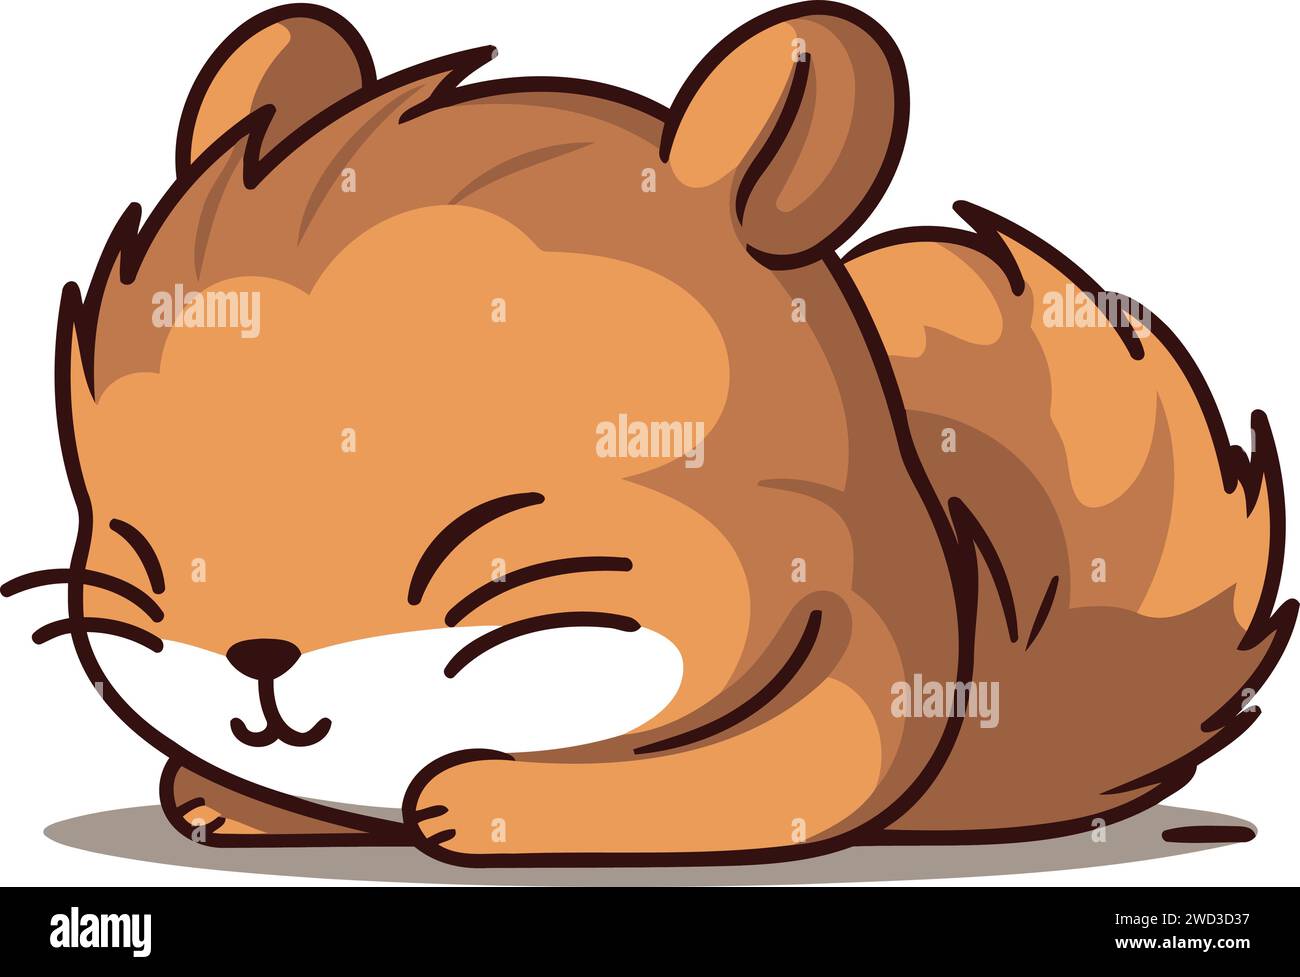 Niedliches, kleines Chipmunk, das schläft. Vektor-Zeichentrickfigur Illustration. Stock Vektor